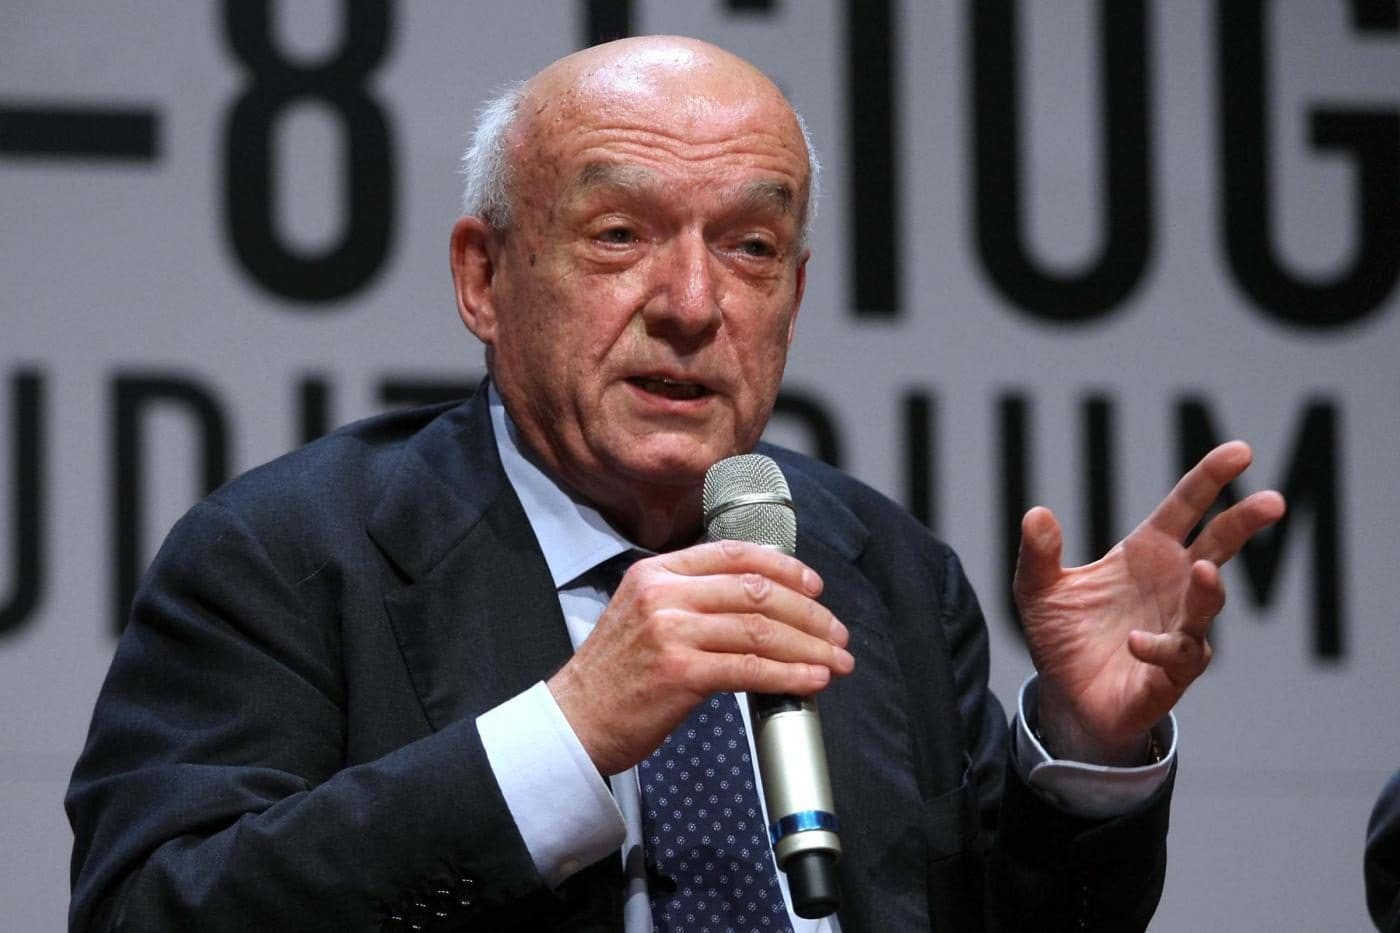 Antonio Paolucci, l’ex ministro dei Beni Culturali, è morto, era un gigante della cultura italiana